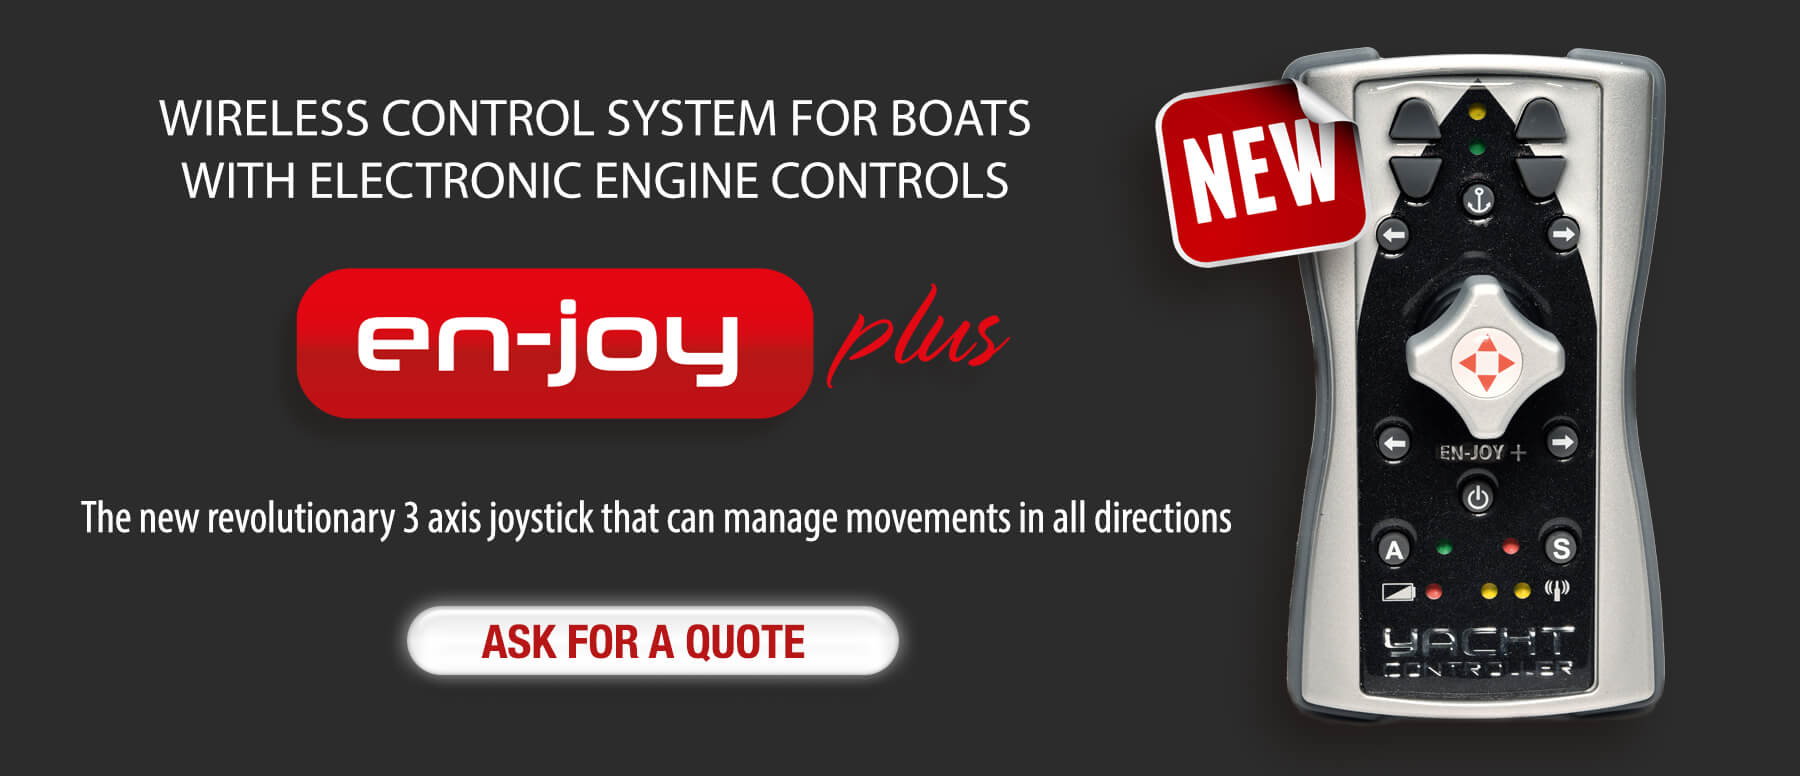 En-Joy Wireless Control System